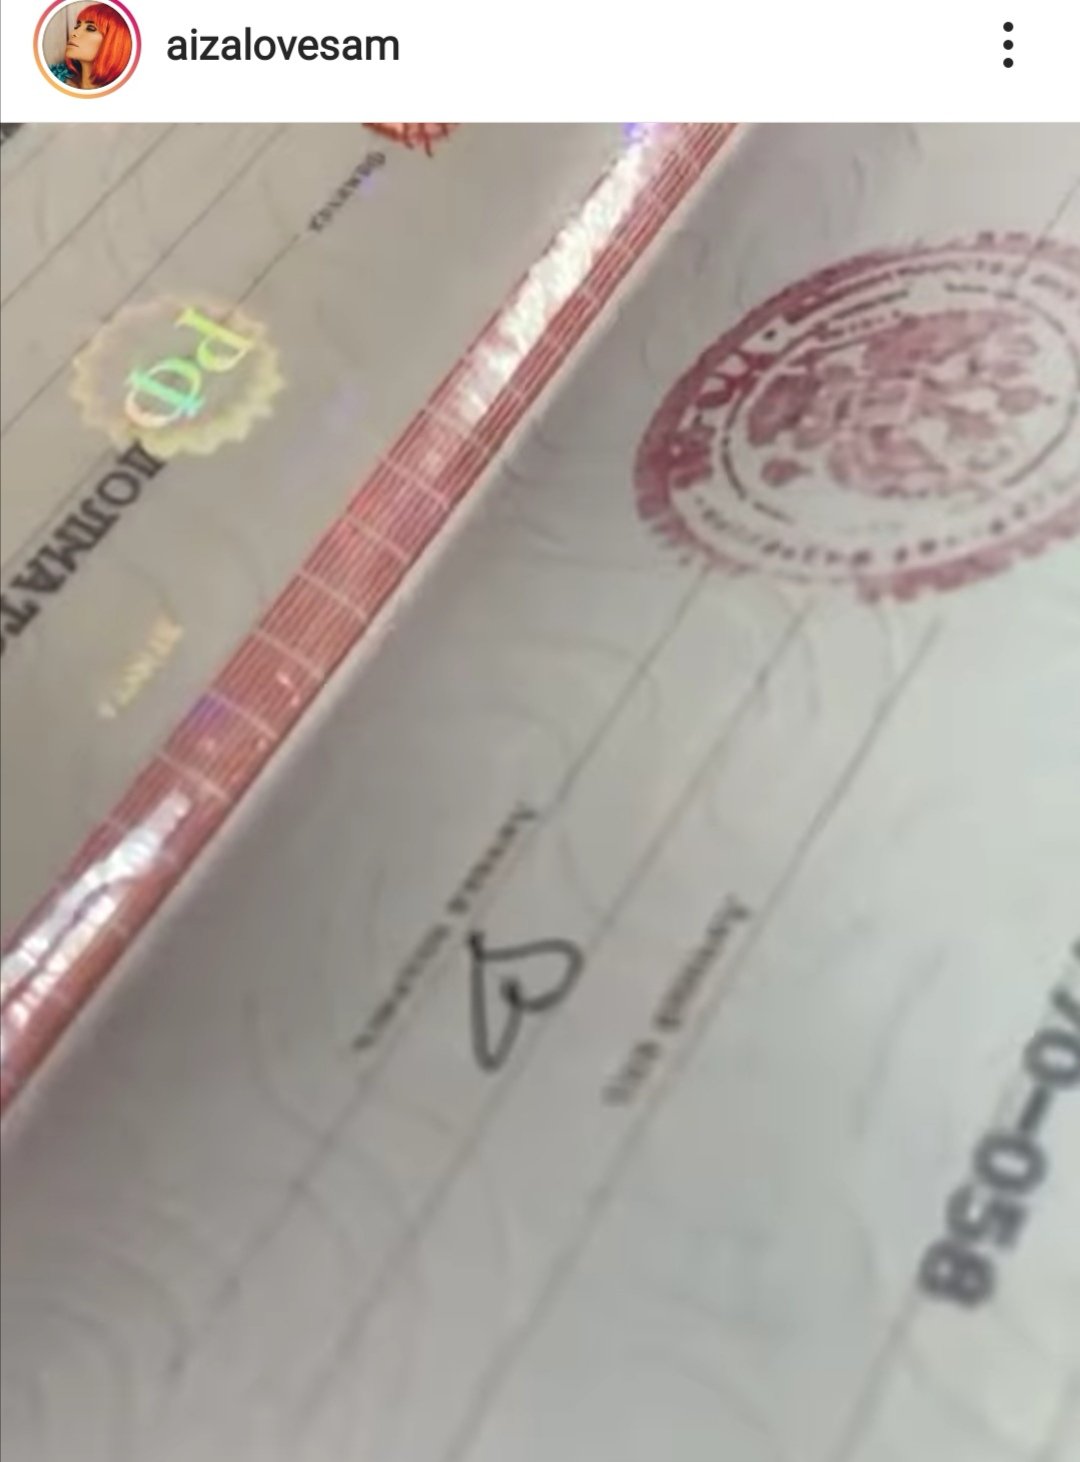 Айза Долматова призналась, кто надоумил ее выбрать себе необычную роспись в паспорте